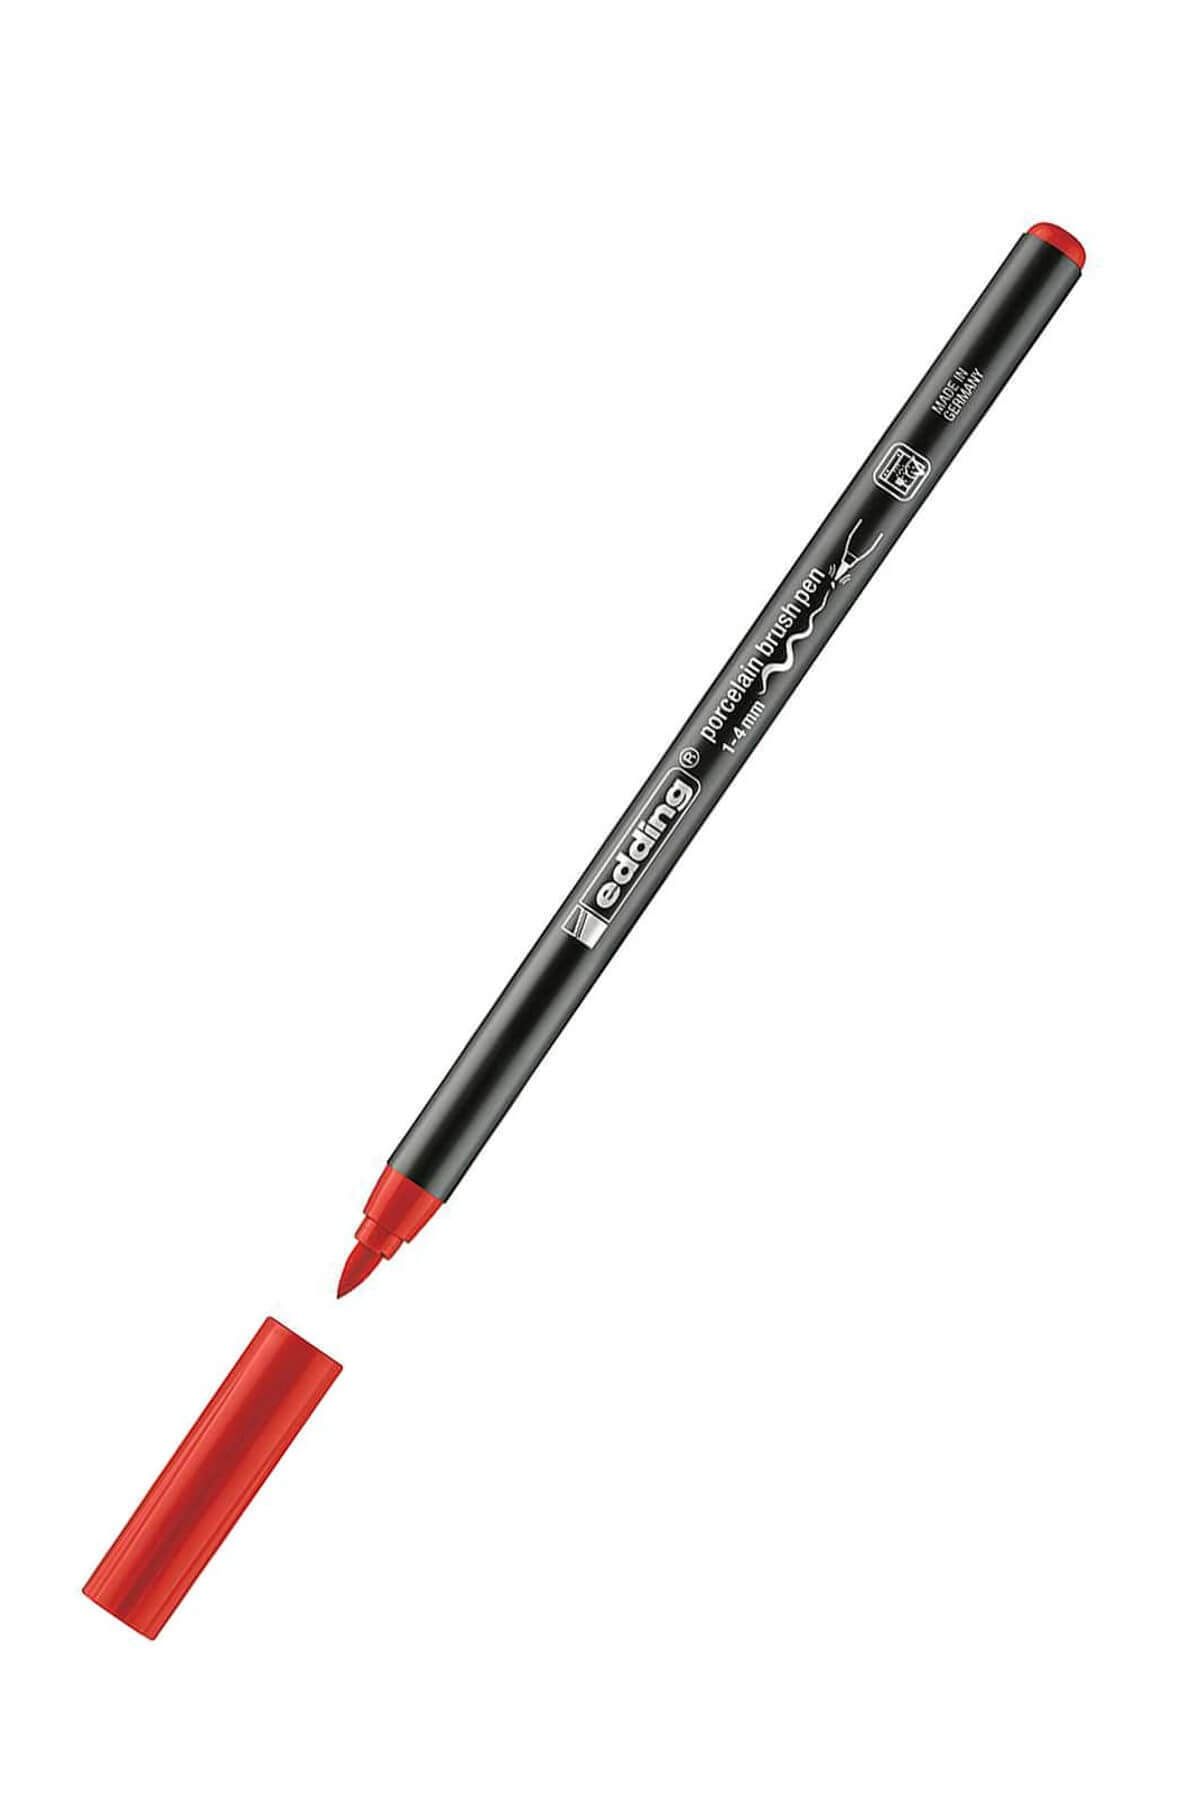 Edding Eddıng Porselen Kalemi Bulk Kırmızı Ed4200Bulk02